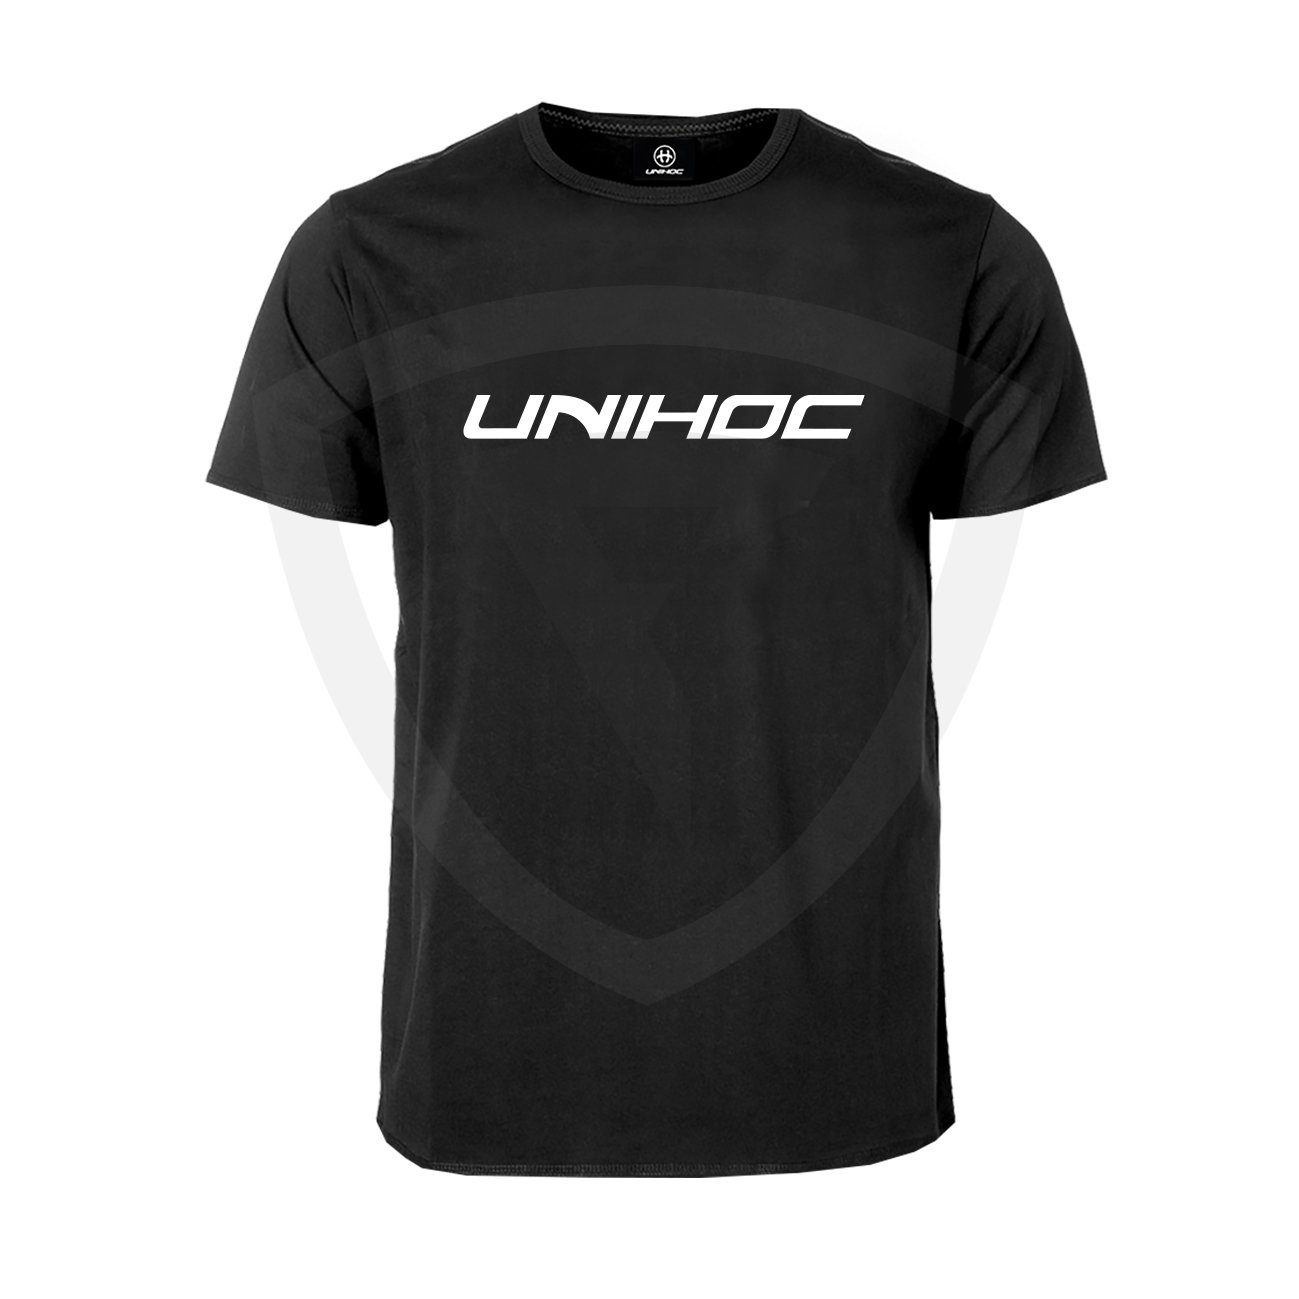 Unihoc T-shirt Classic Black JR 160 černá